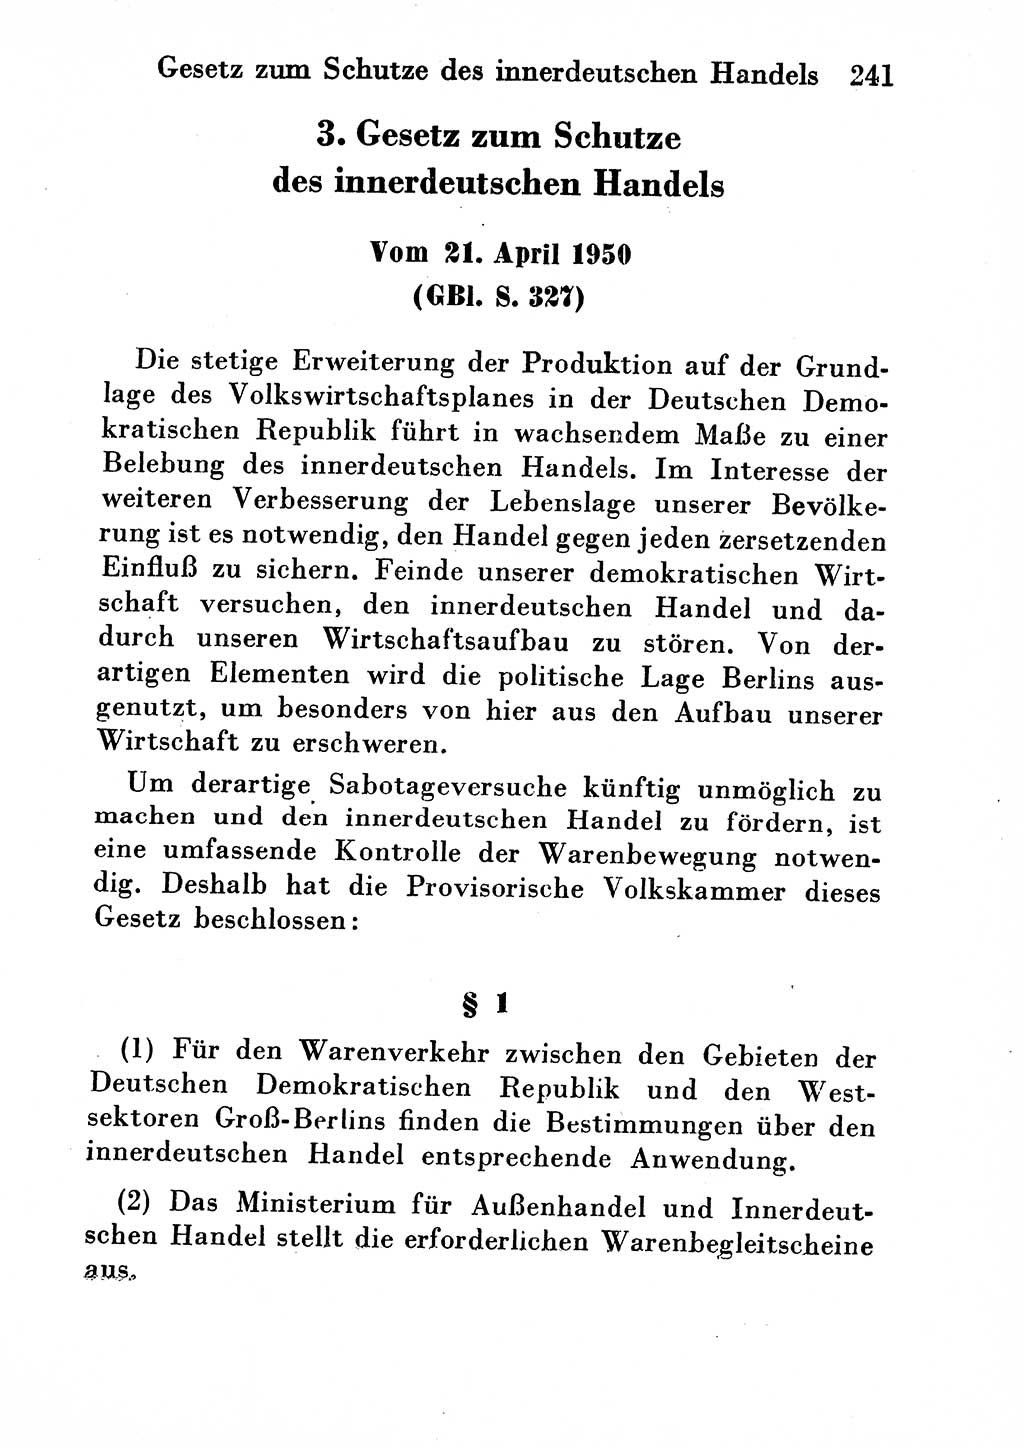 Strafgesetzbuch (StGB) und andere Strafgesetze [Deutsche Demokratische Republik (DDR)] 1954, Seite 241 (StGB Strafges. DDR 1954, S. 241)